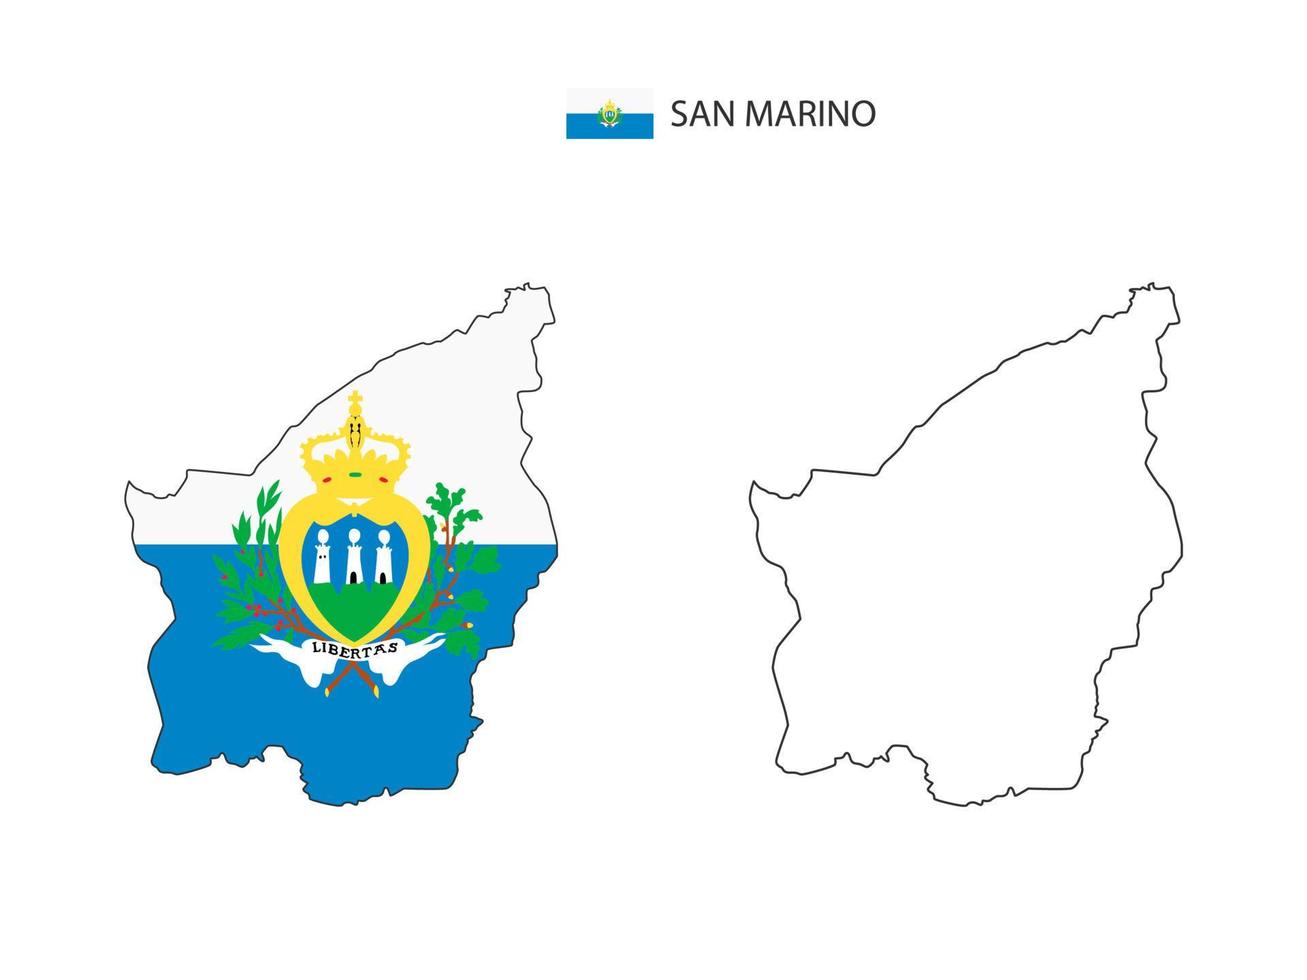 san marino kaart stad vector verdeeld door schets eenvoud stijl. hebben 2 versies, zwart dun lijn versie en kleur van land vlag versie. beide kaart waren Aan de wit achtergrond.